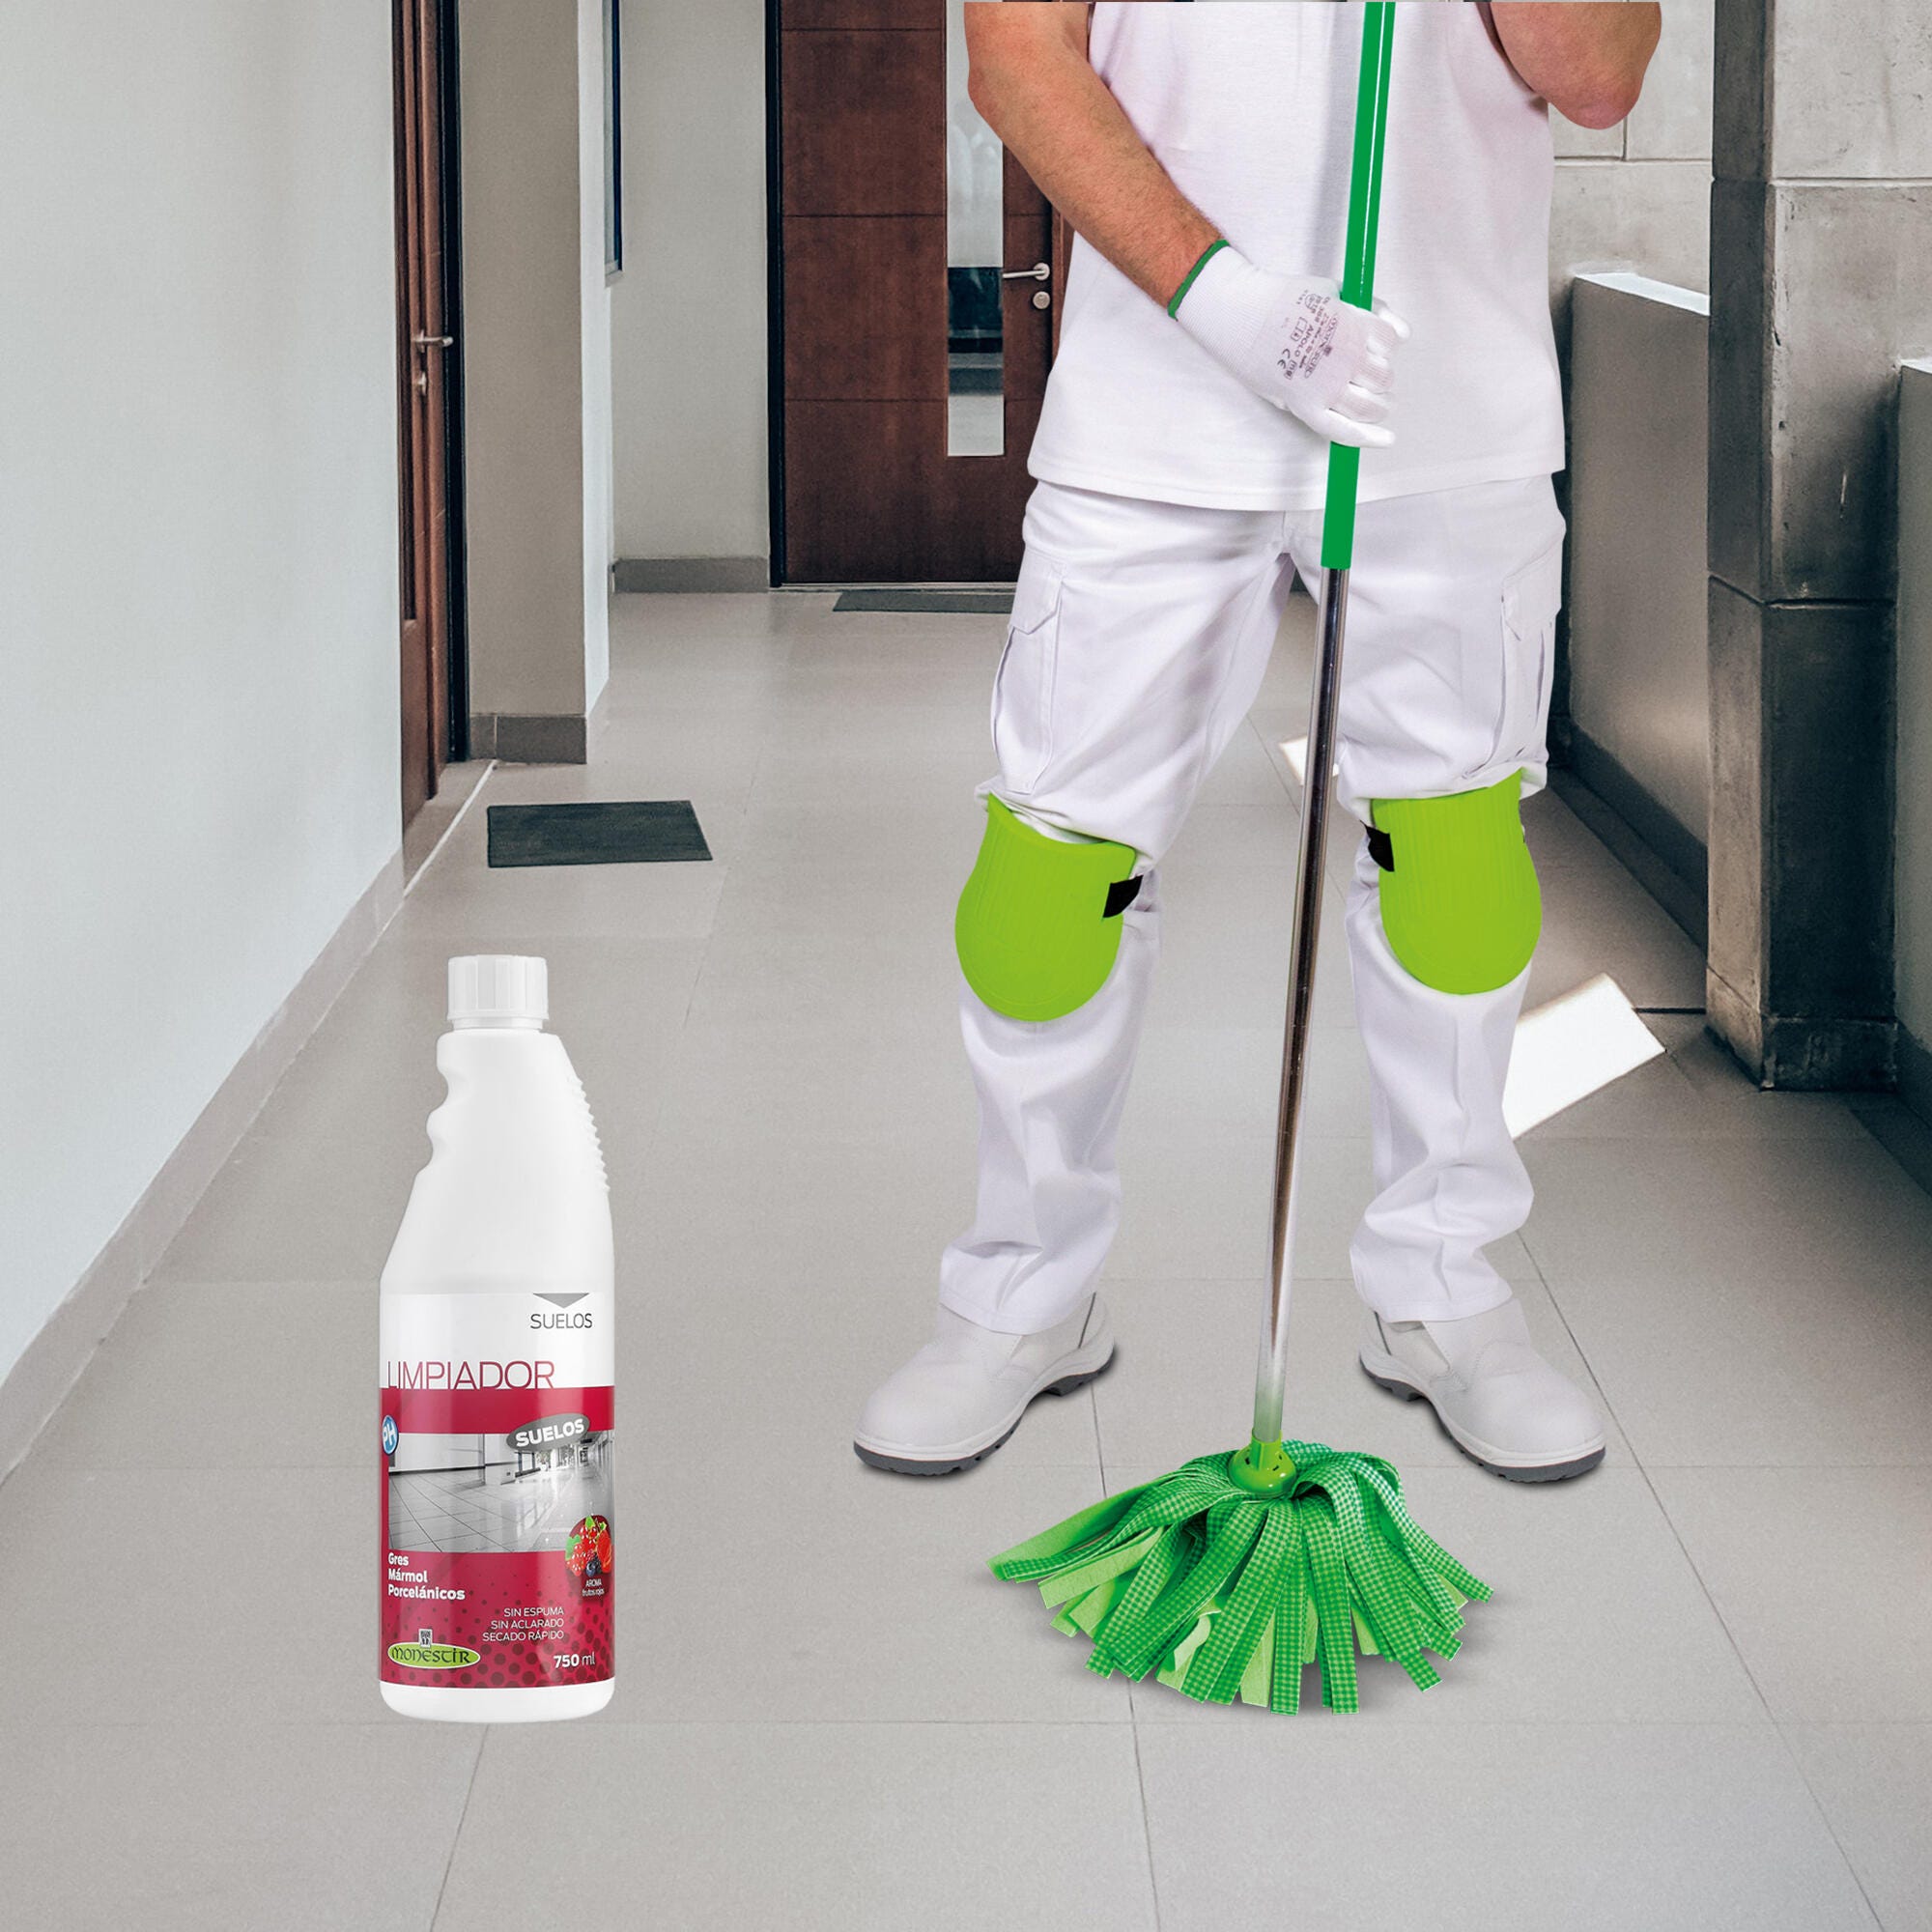 Limpiador parquet  Starwax,limpieza de la casa